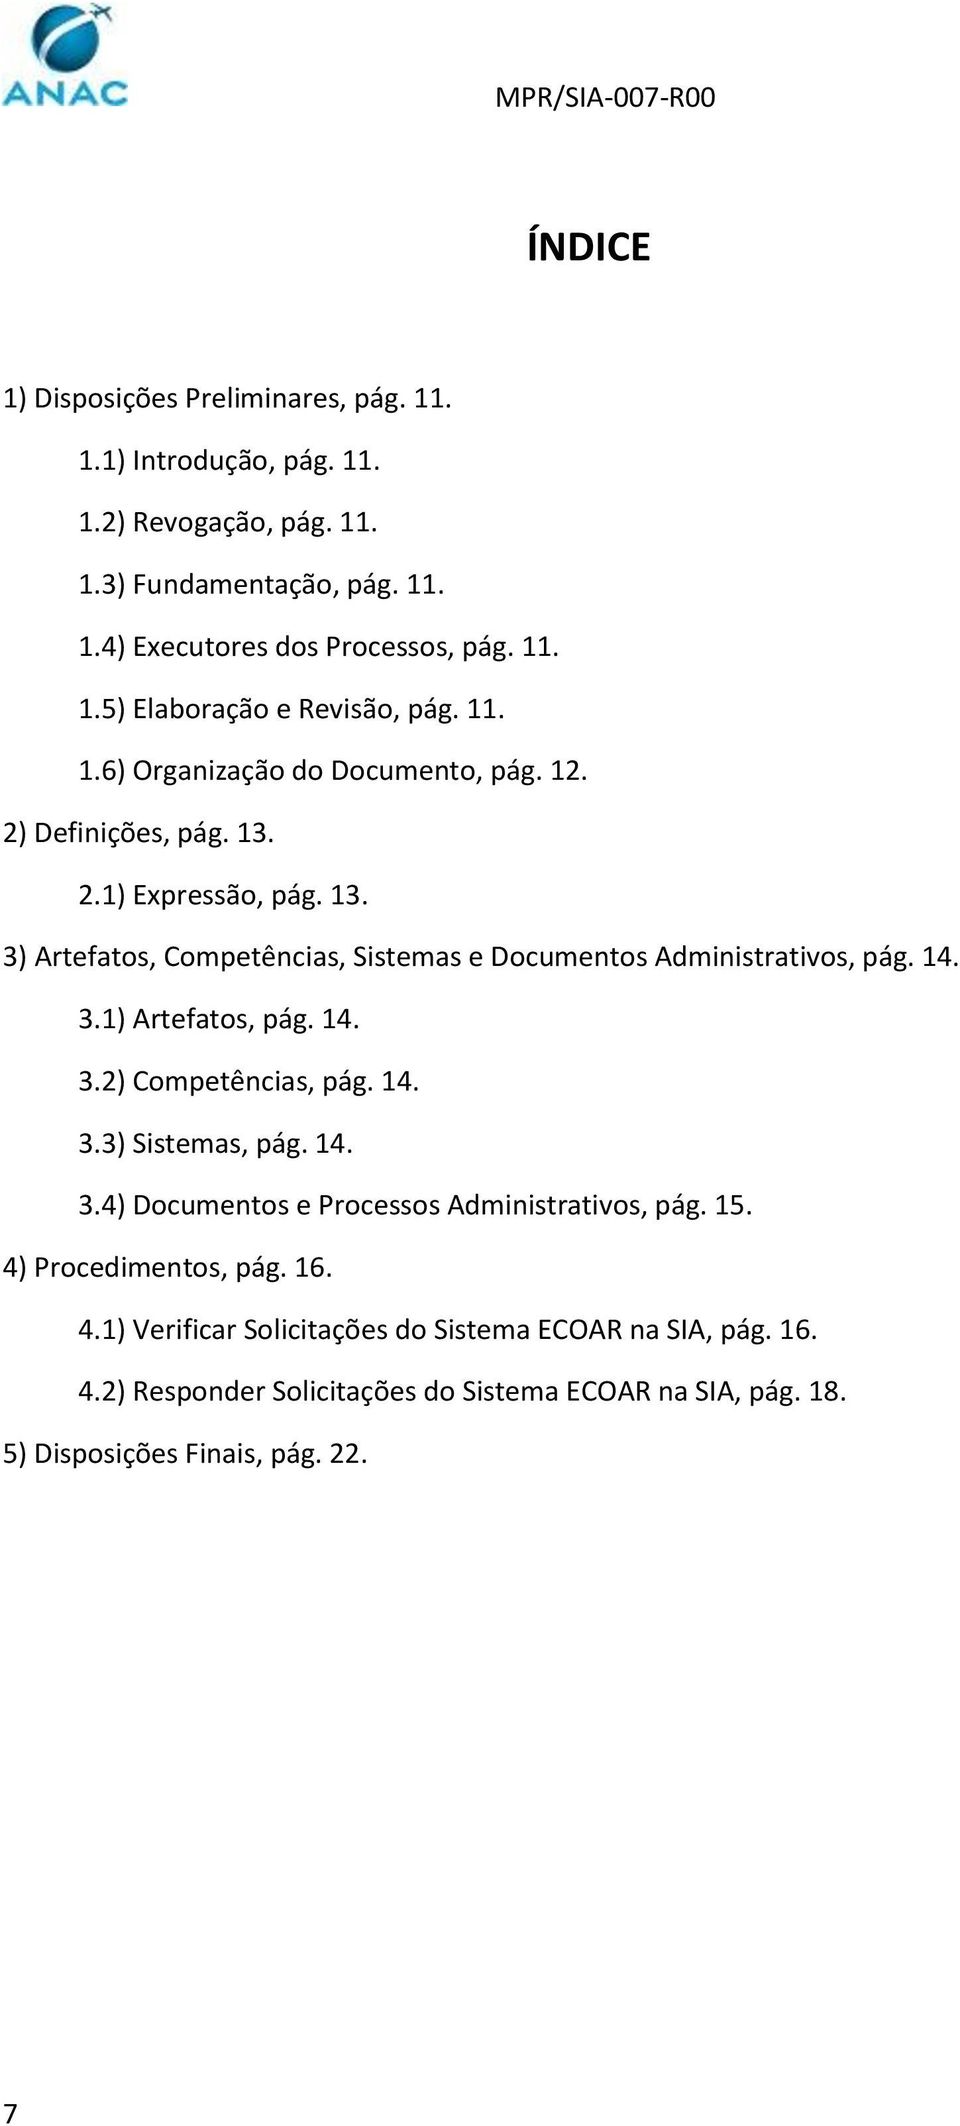 14. 3.2) Competências, pág. 14. 3.3) Sistemas, pág. 14. 3.4) Documentos e Processos Administrativos, pág. 15. 4) Procedimentos, pág. 16. 4.1) Verificar Solicitações do Sistema ECOAR na SIA, pág.